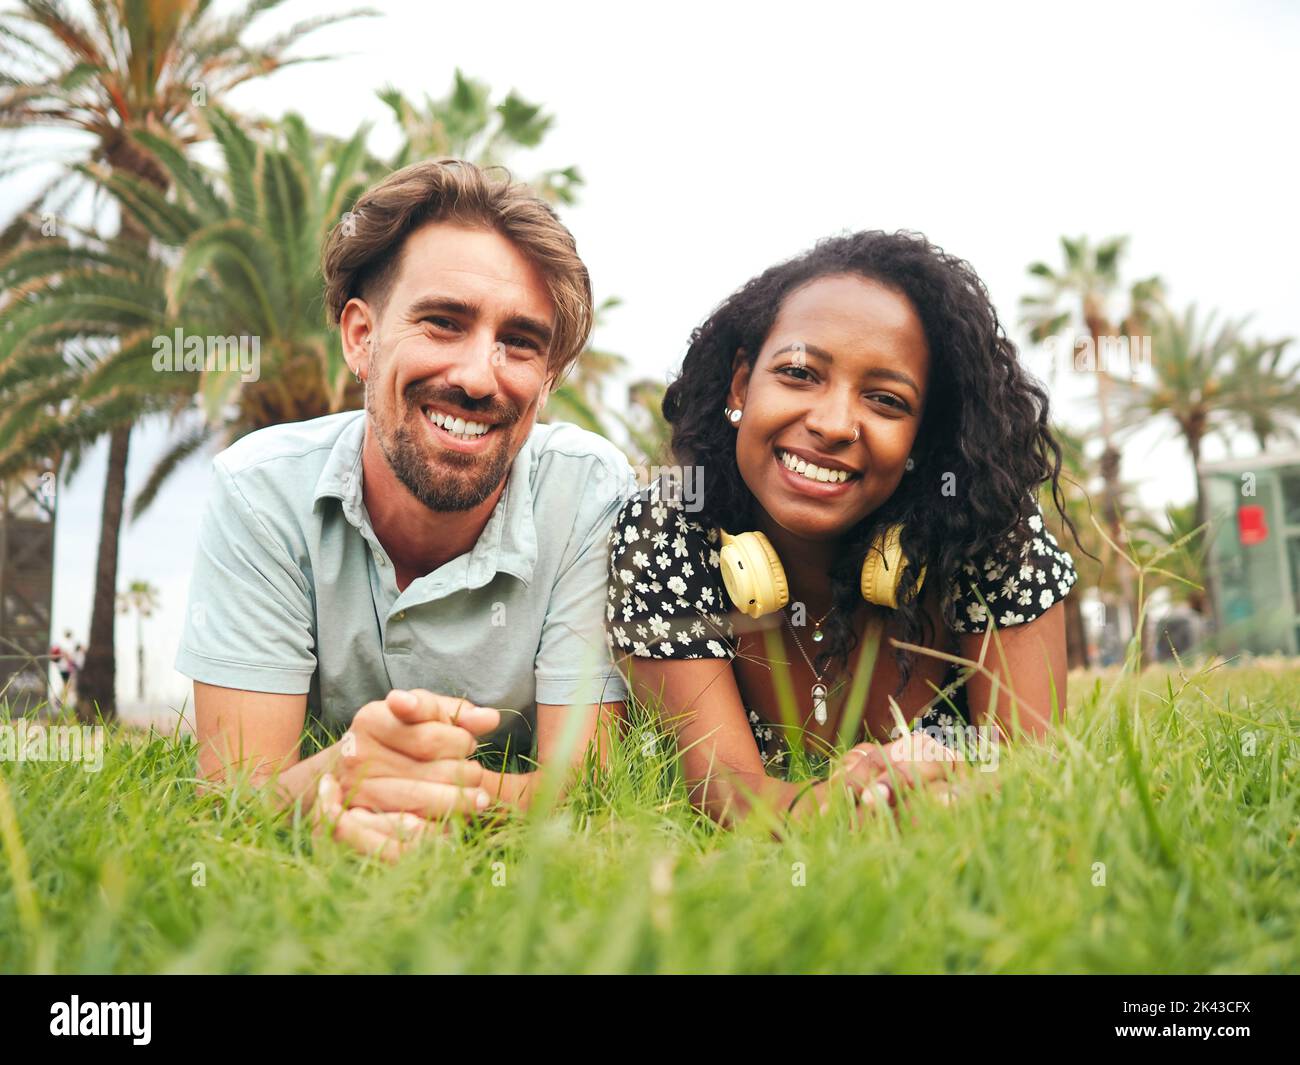 Lächelndes junges, multiethnisches heterosexuelles Paar, das auf dem Gras in einem Park liegt Stockfoto